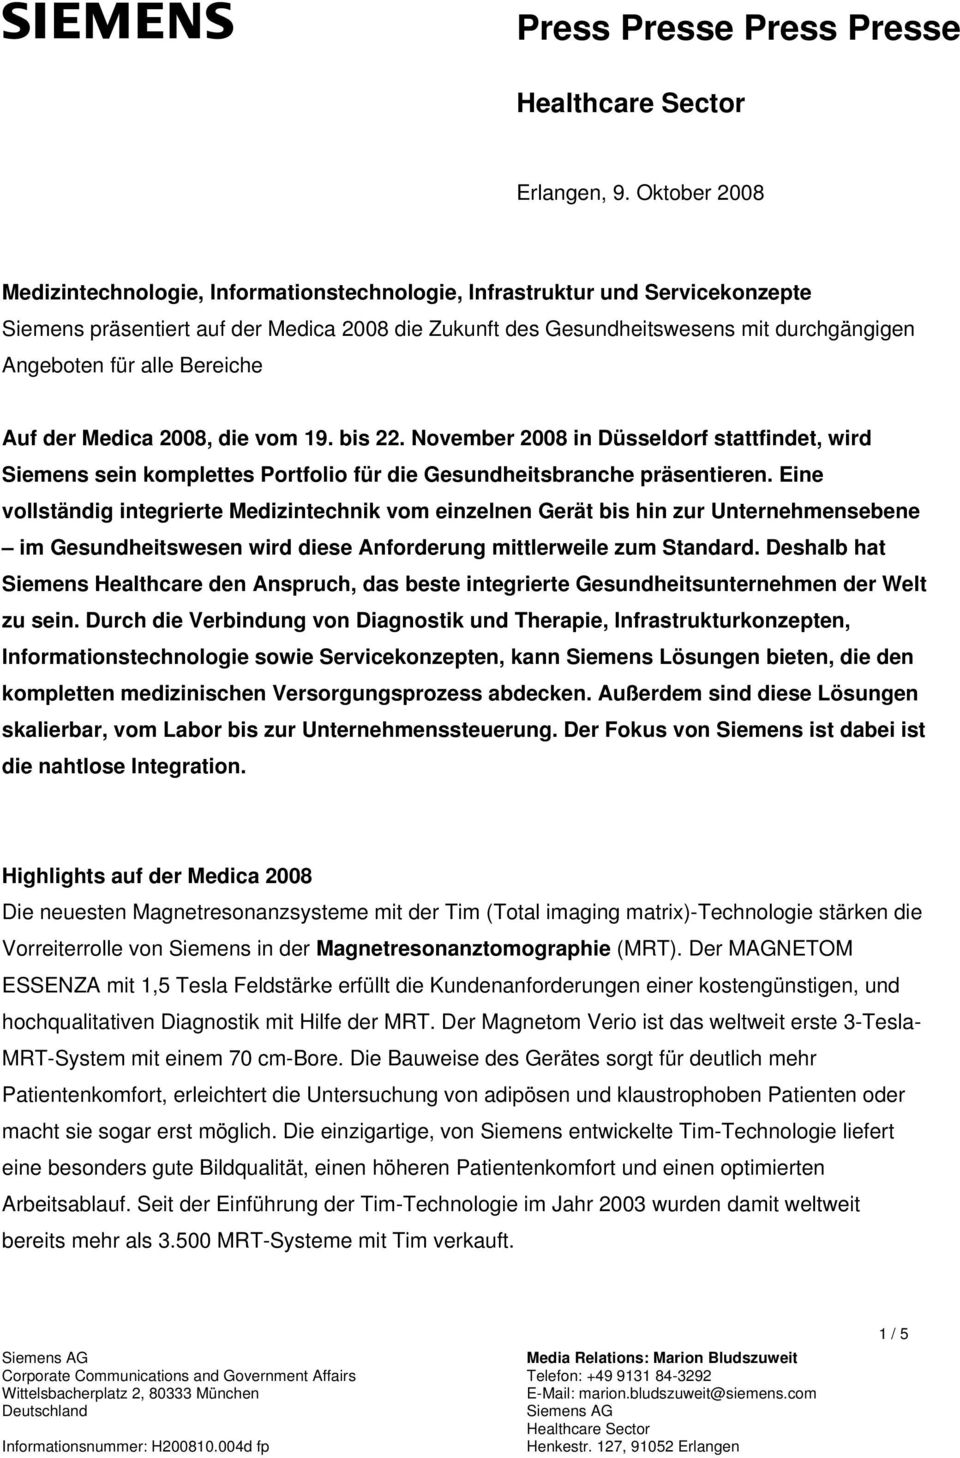 alle Bereiche Auf der Medica 2008, die vom 19. bis 22. November 2008 in Düsseldorf stattfindet, wird Siemens sein komplettes Portfolio für die Gesundheitsbranche präsentieren.